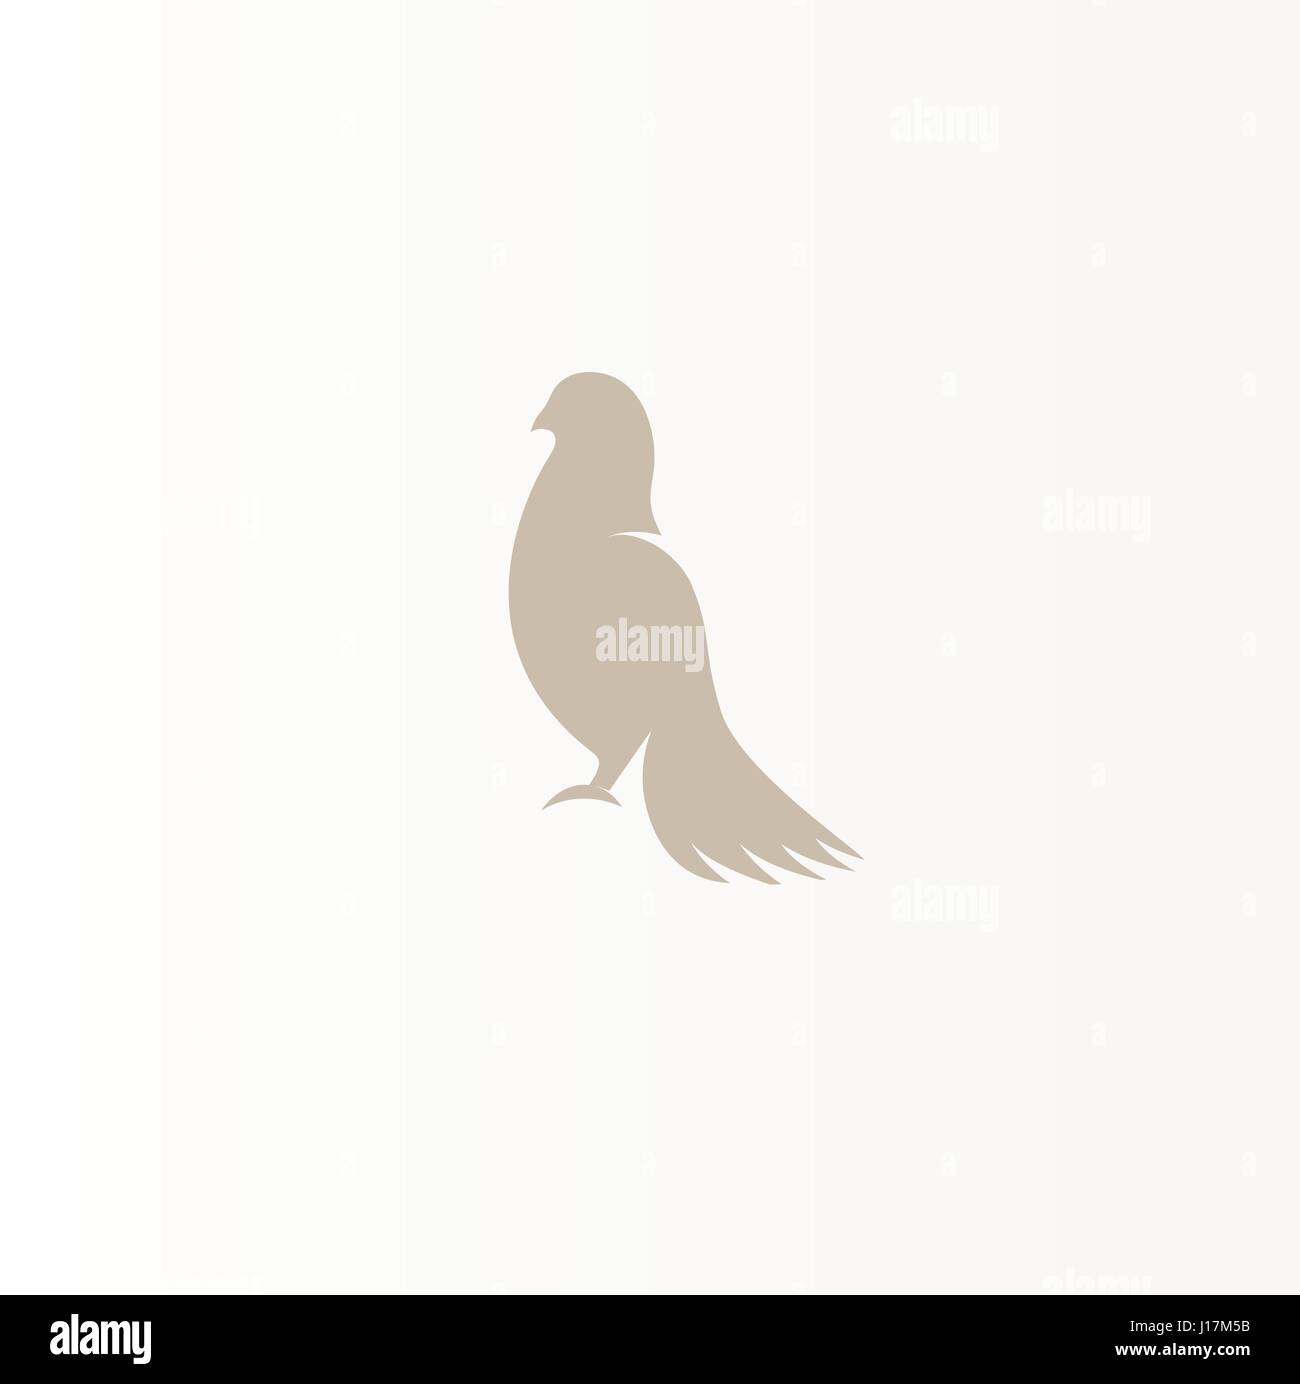 Abstract isolato color bronzo silhouette di uccelli logo su sfondo bianco, le ali di piume e logotipo elementi imposta illustrazione vettoriale Illustrazione Vettoriale